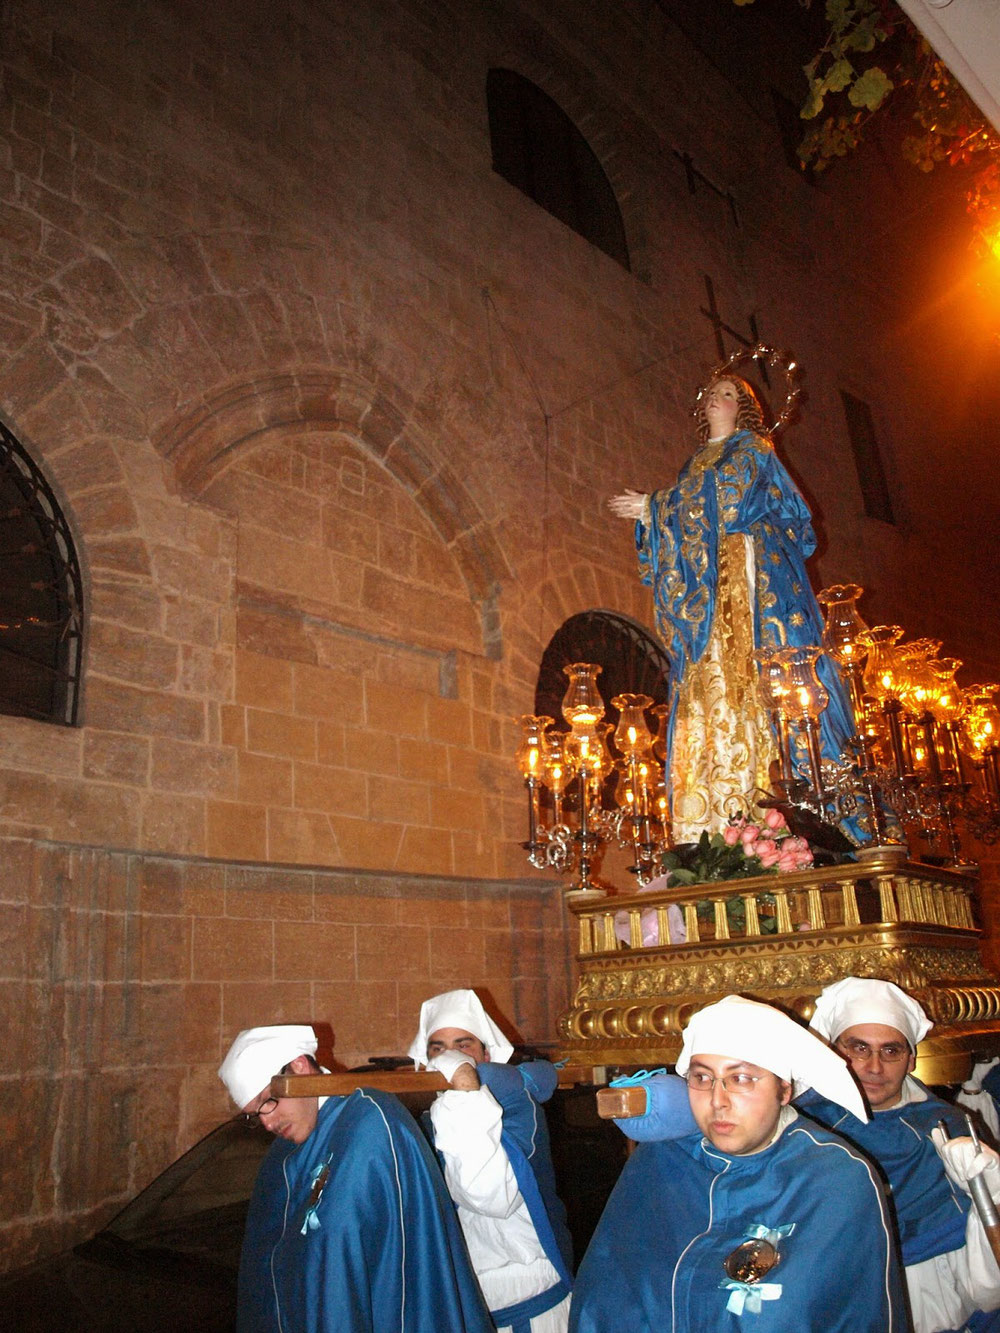 La Processione passa davanti all'ex convento di San Francesco, è visibile la sagoma del vecchio portale della Chiesa